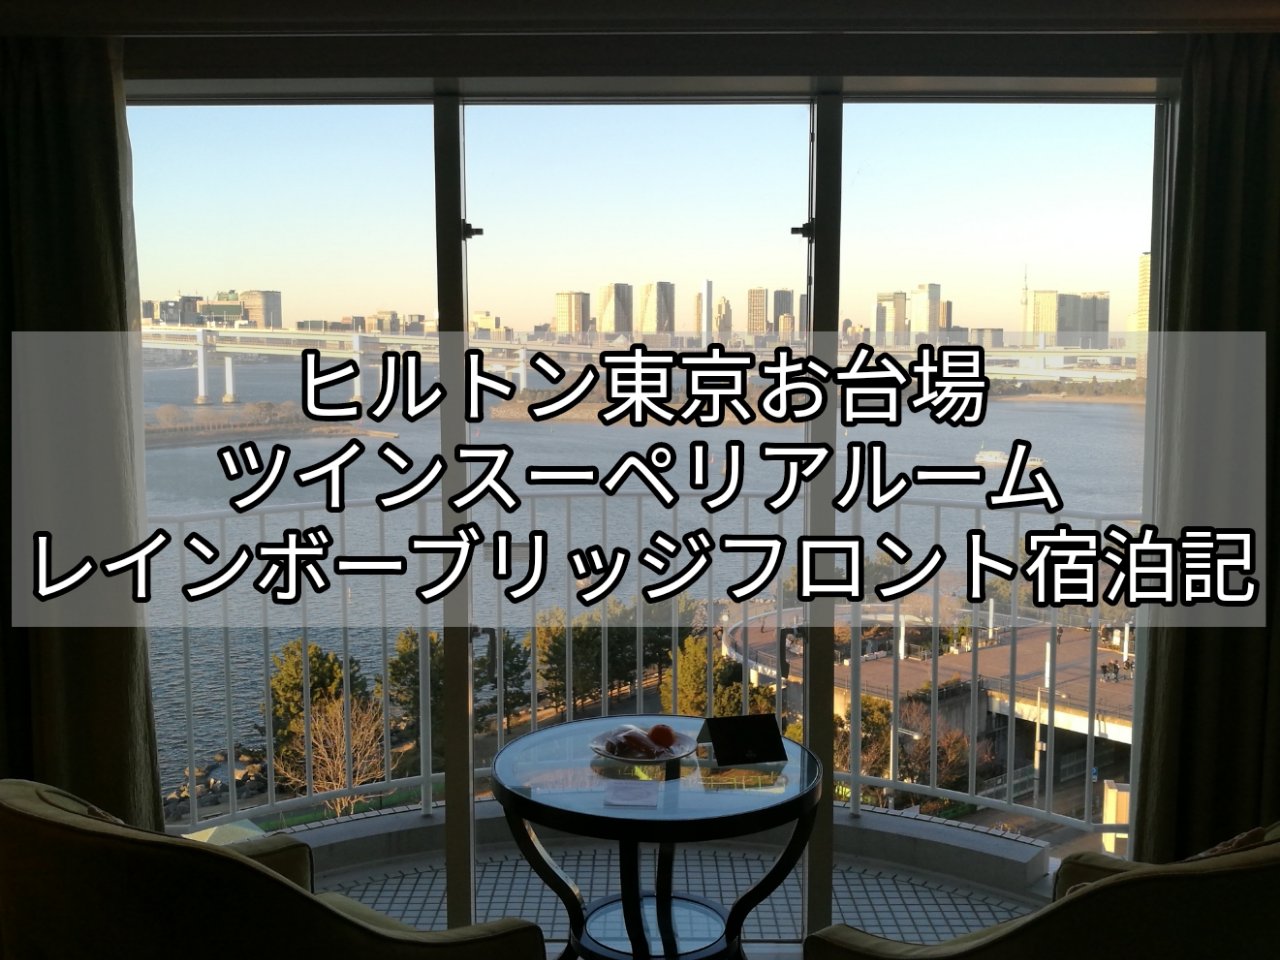 ヒルトン東京お台場宿泊記 ツインスーペリアルーム レインボーブリッジフロント910号室レビュー 19年ダイヤモンド修行1滞在目1月9日 Hilton Tokyo Odaiba Review Room No910 Nanatabi